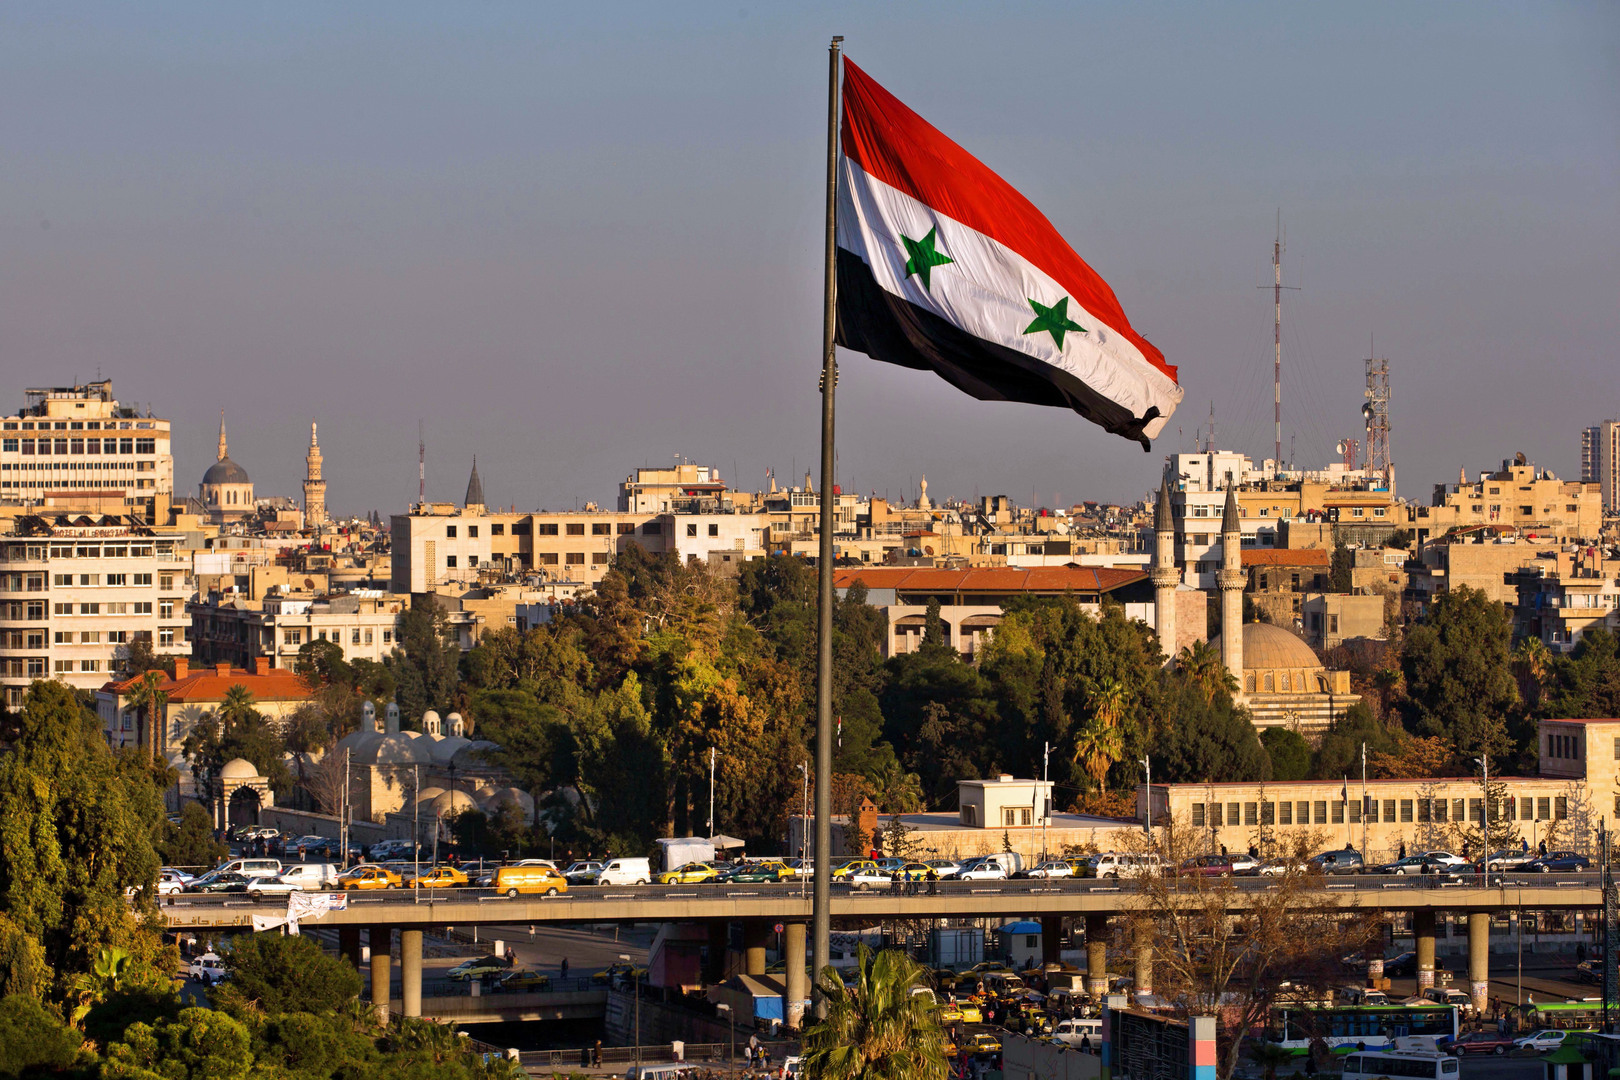 وزير الزراعة السوري: المرحلة المقبلة ستشهد تعاونا كبيرا بين سوريا والأردن